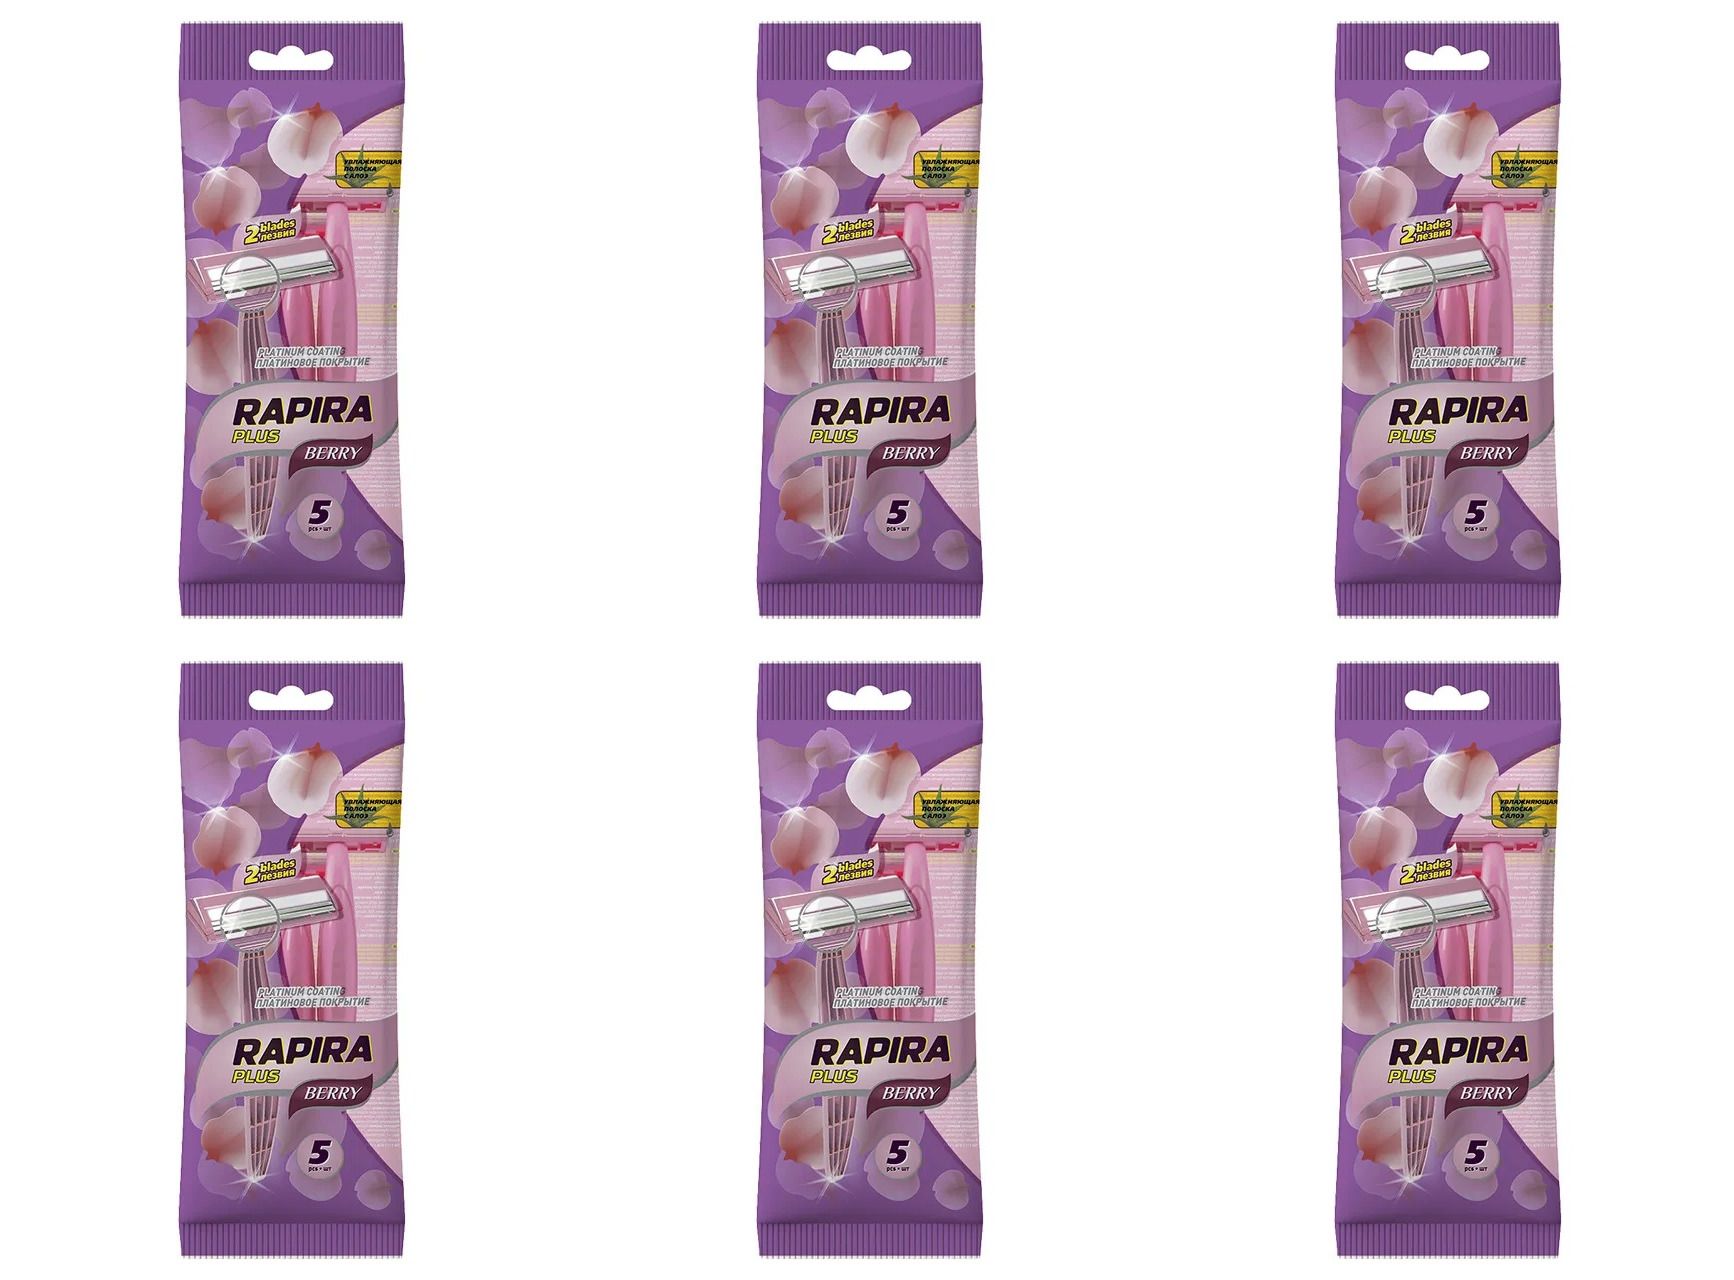 Одноразовый станок RAPIRA Berry Plus, женский, 2 лезвия, 5шт в упаковке, 6шт toptech одноразовый станок с 2 лезвиями 5 0